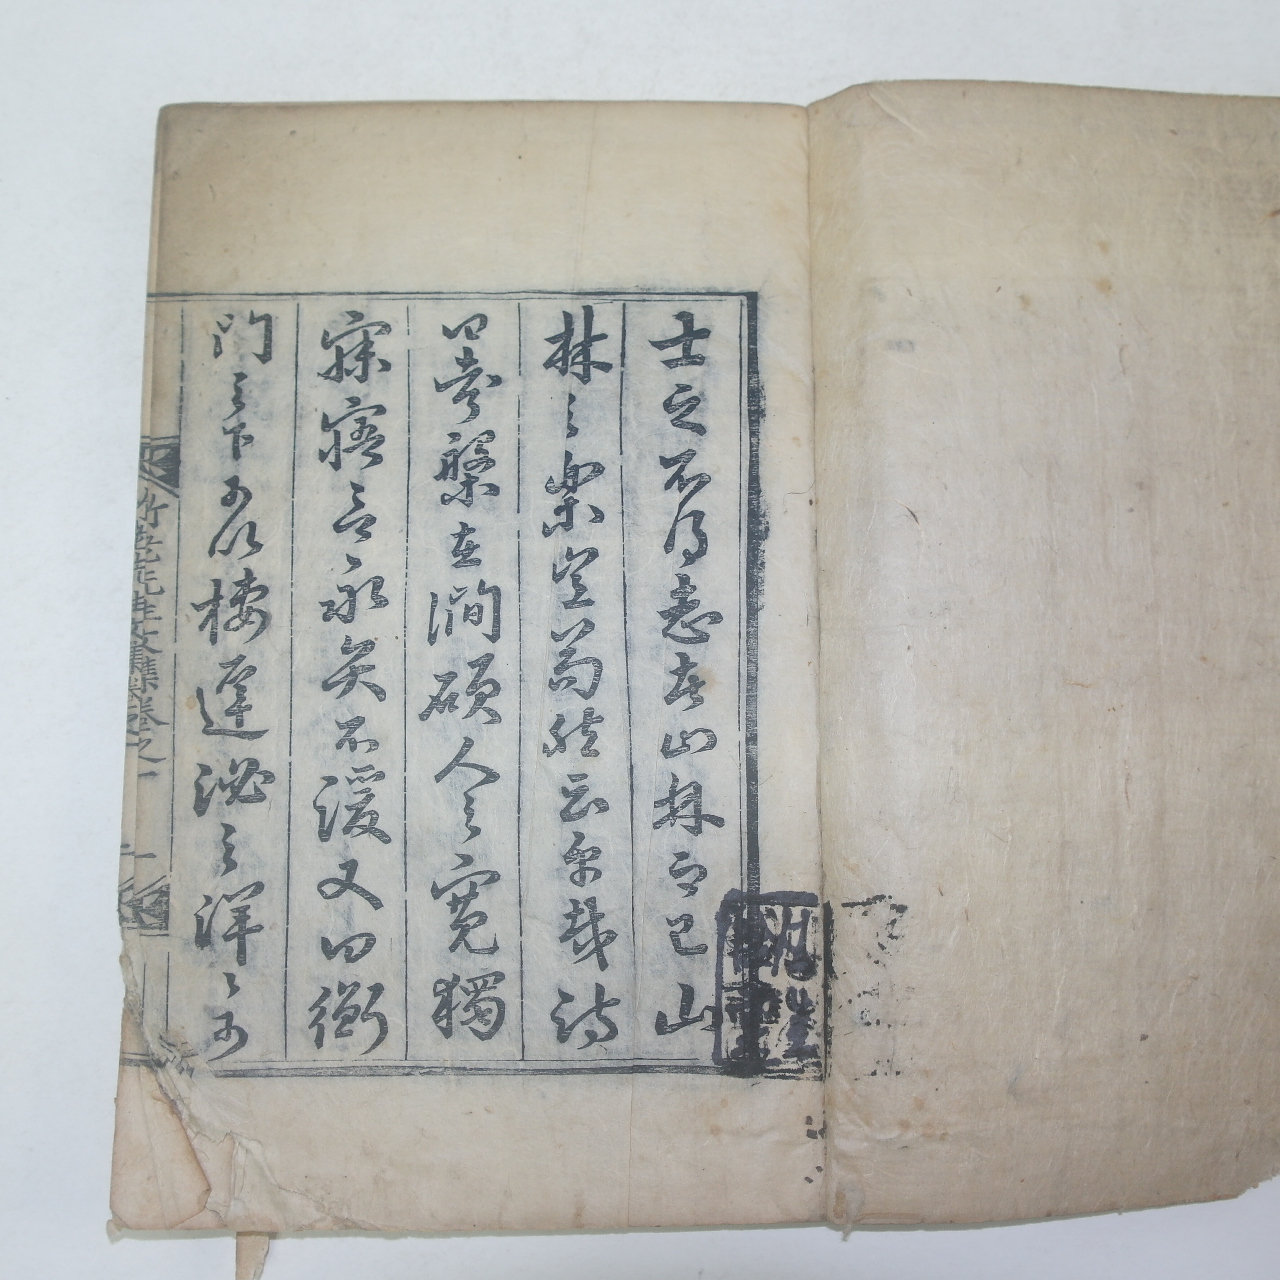 1834년 목판본 평산신씨 신활(申活) 죽로선생문집(竹老先生文集)권1,2  1책